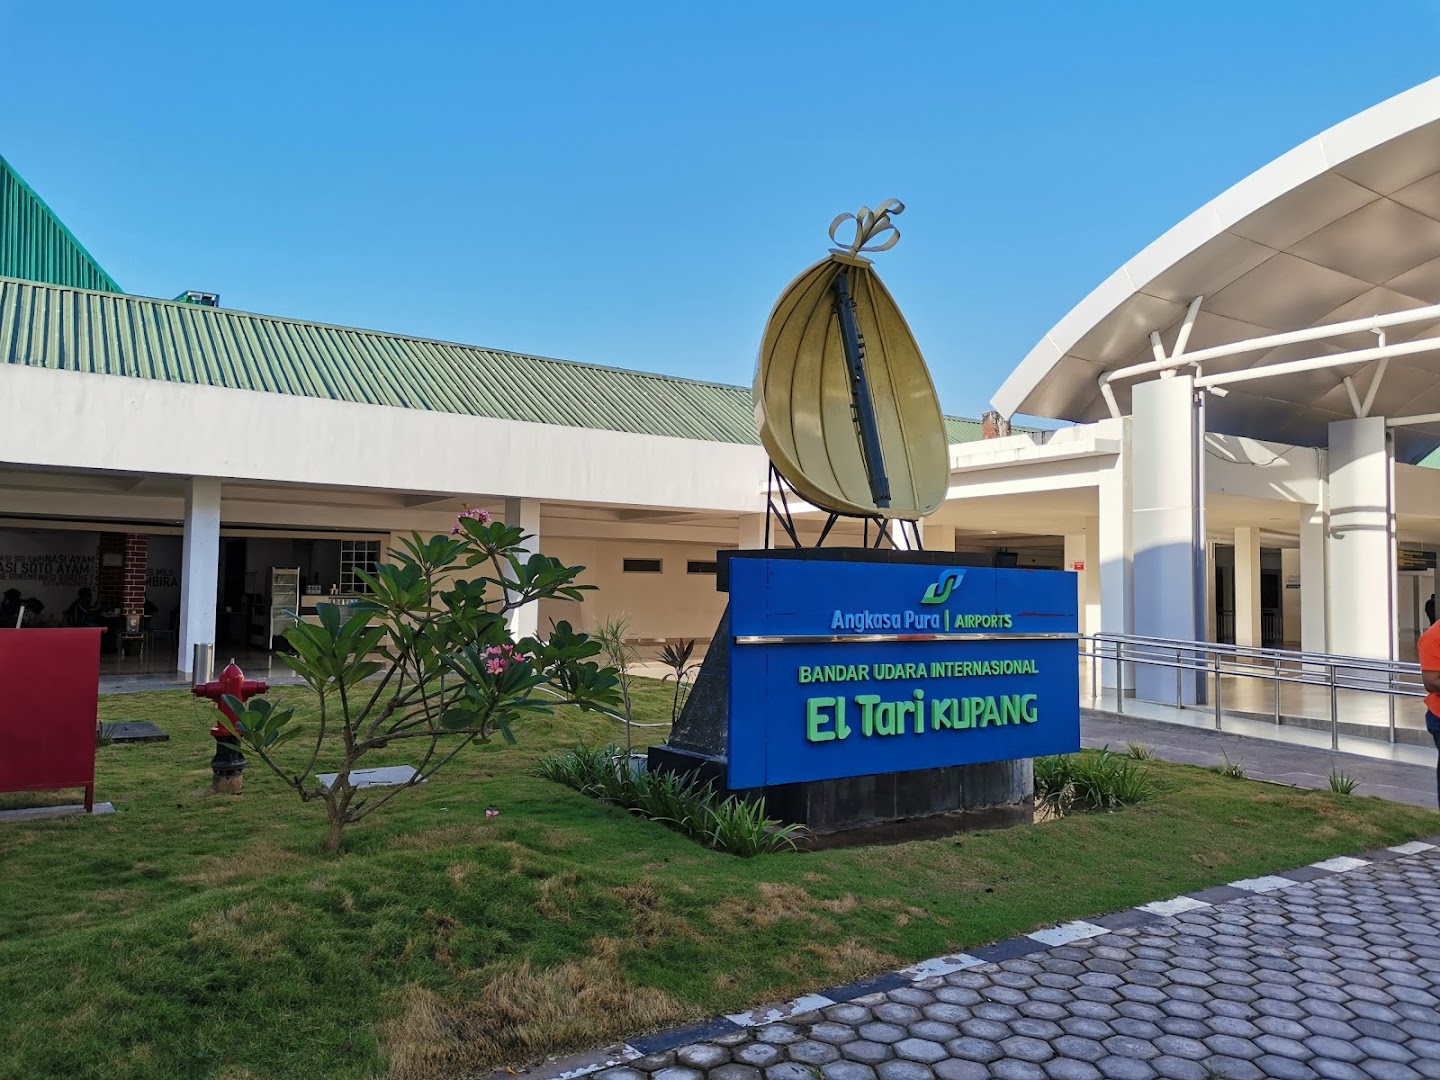 Bandara Internasional El Tari Kupang Photo